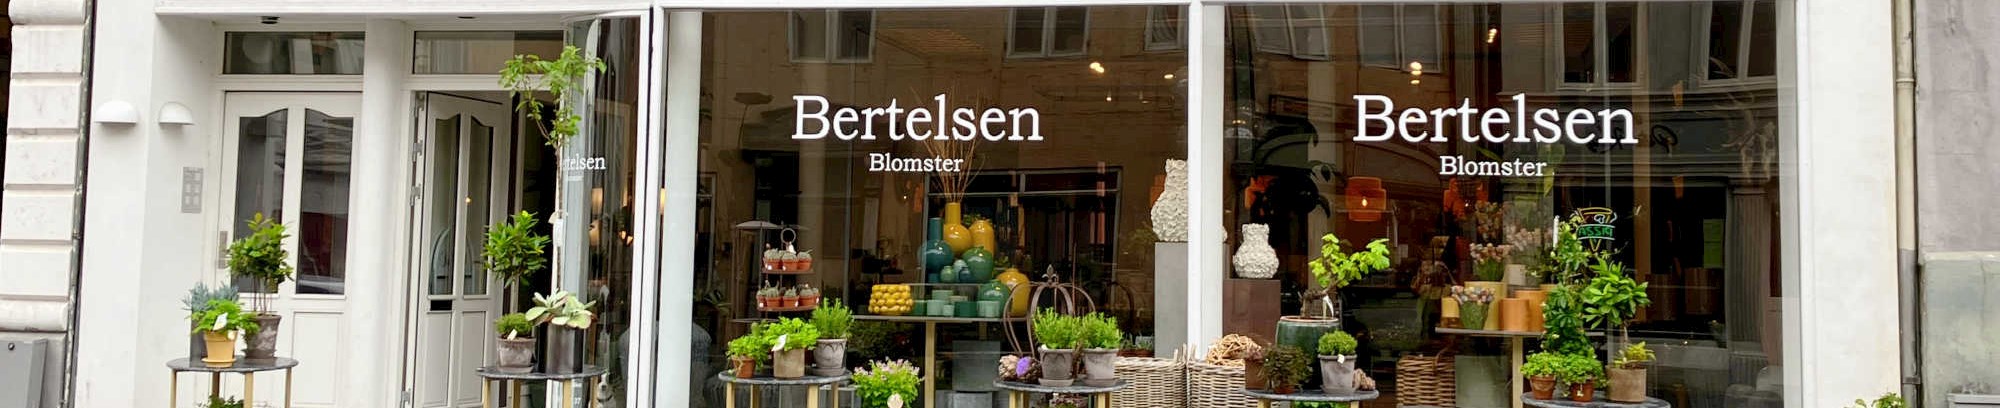 Berthelsens Blomster facade af butikken i Horsens